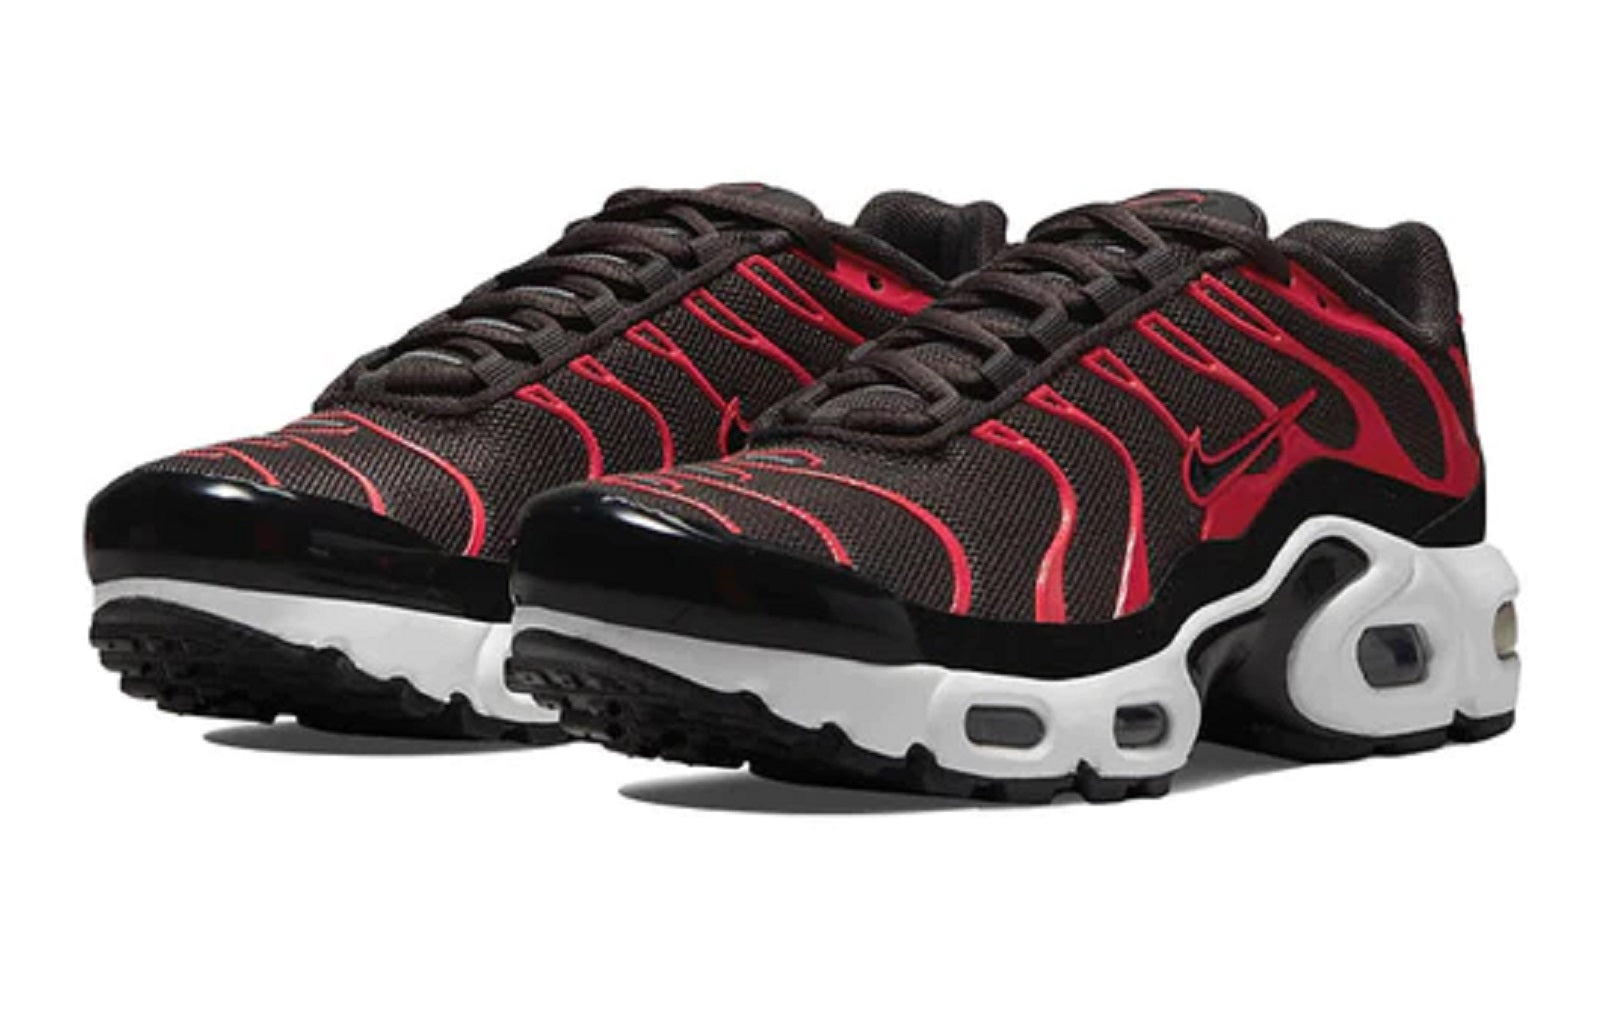 Nike Big Kids Air Max Plus Sneakers,Medium Black Siren red